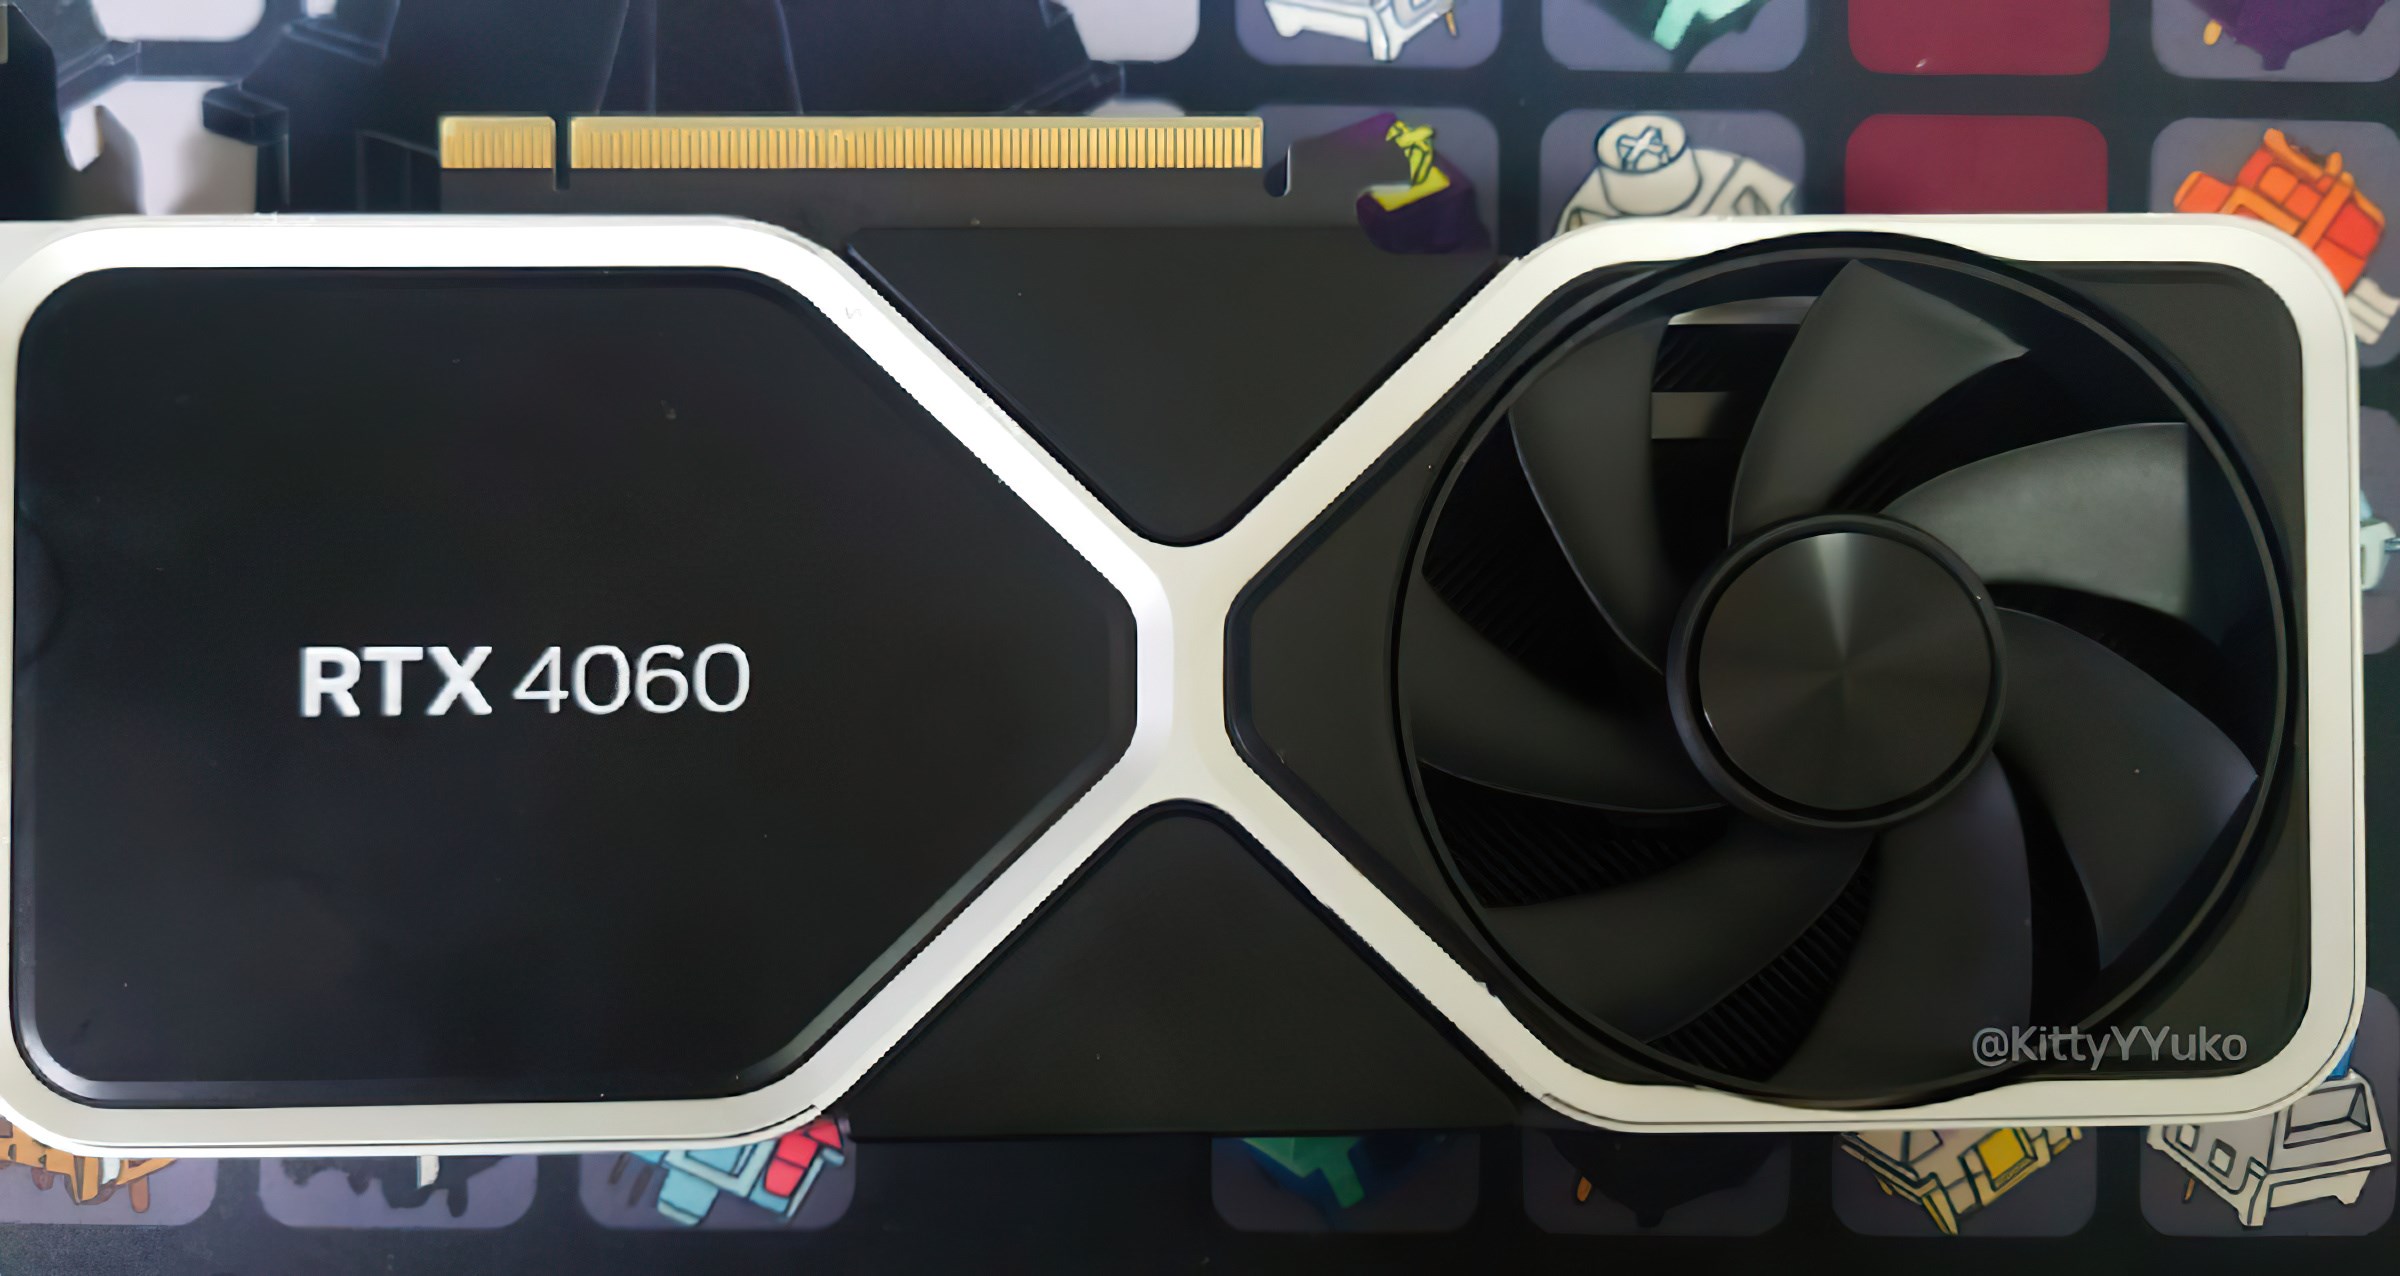 Merakla beklenen Nvidia GeForce RTX 4060 Ti fiyatı ortaya çıktı